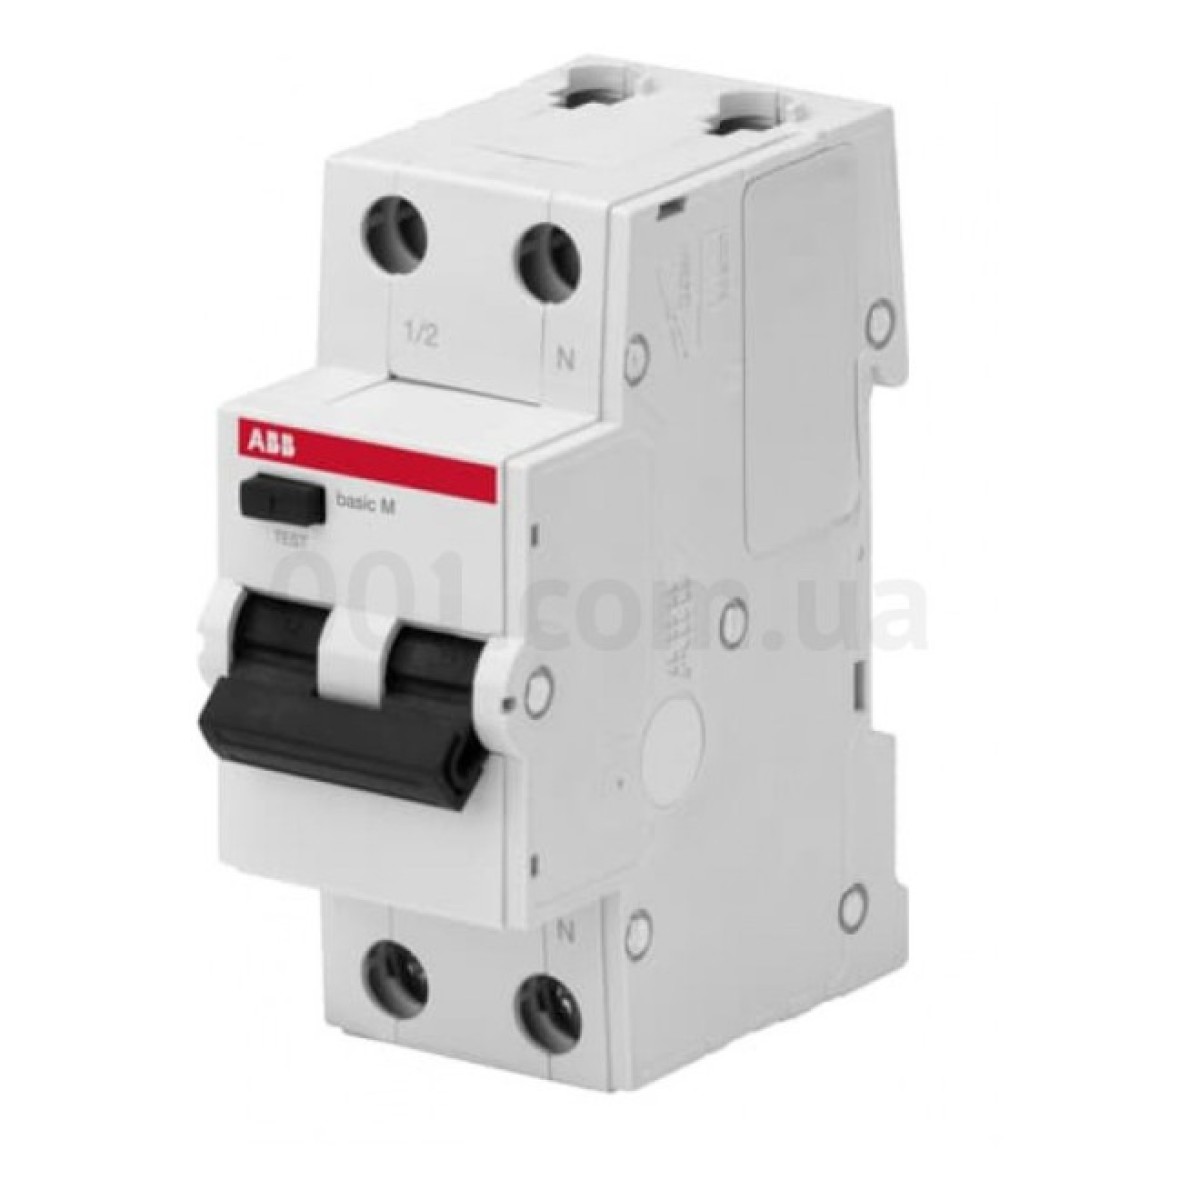 Автоматичний вимикач диференційного струму BMR415C16 1P+N/16А/30мА тип AC BASIC M, ABB 256_256.jpg